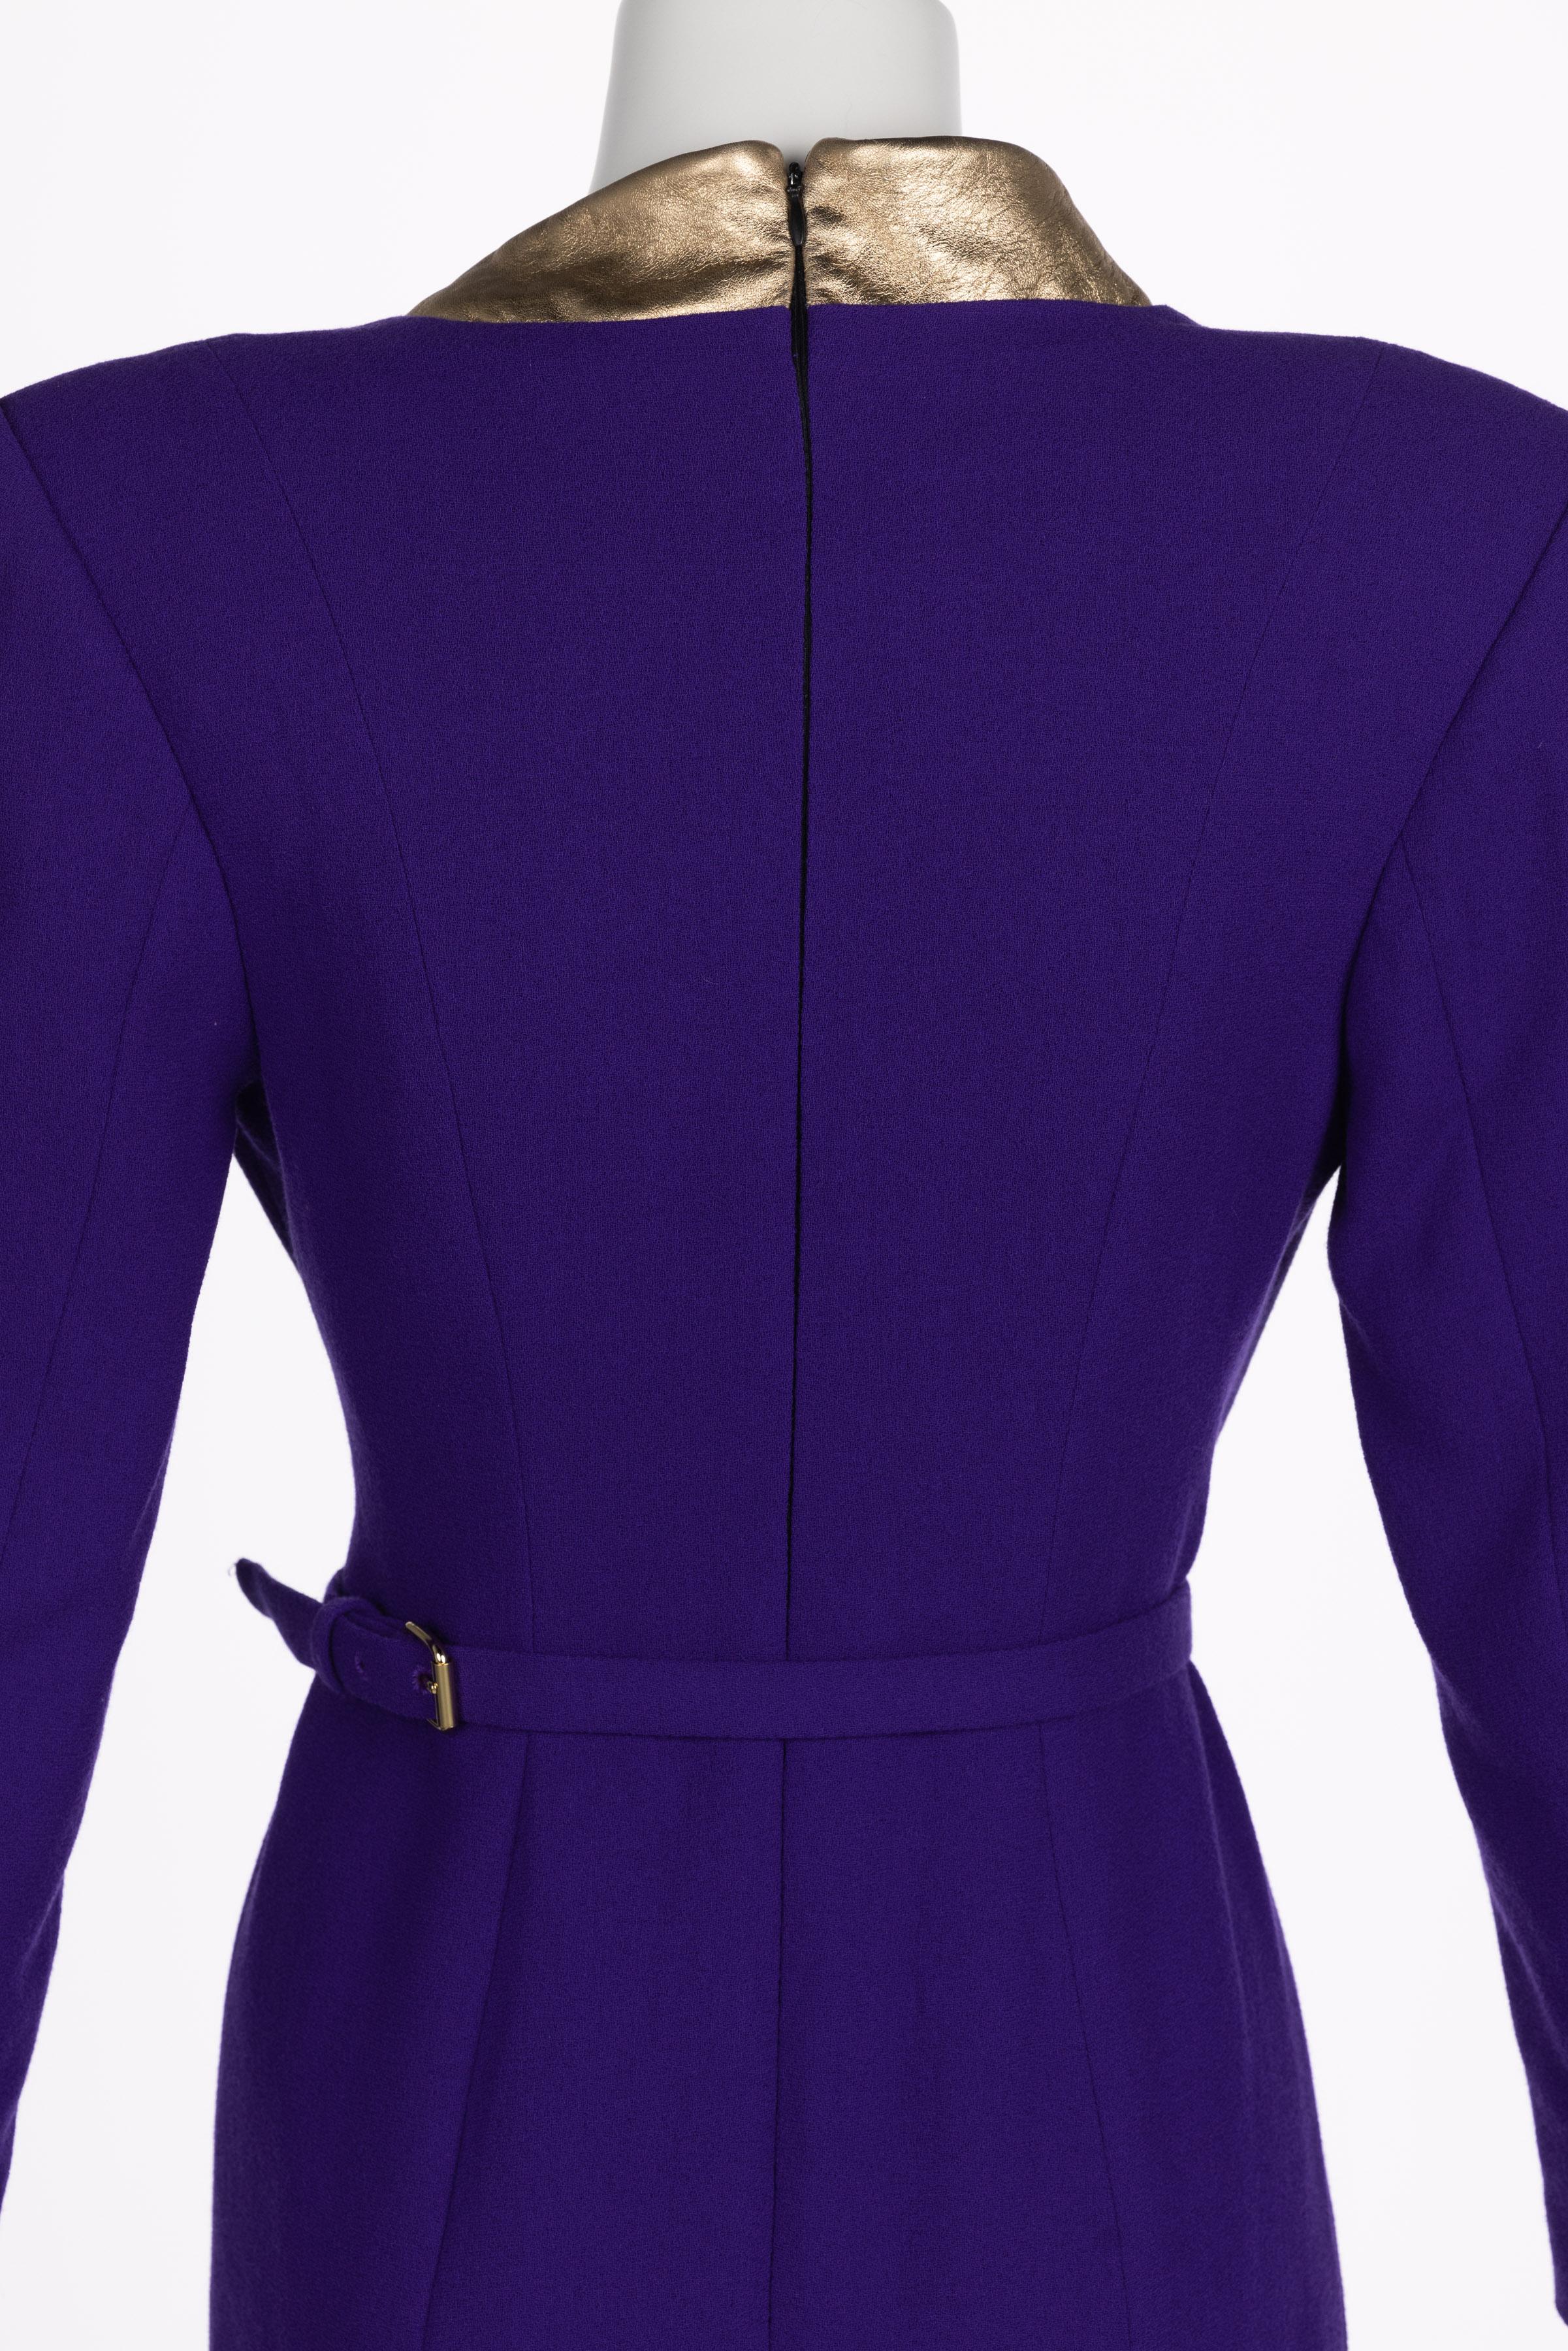 Ronald Van der kemp Haute Couture Dress, 2018 For Sale 9